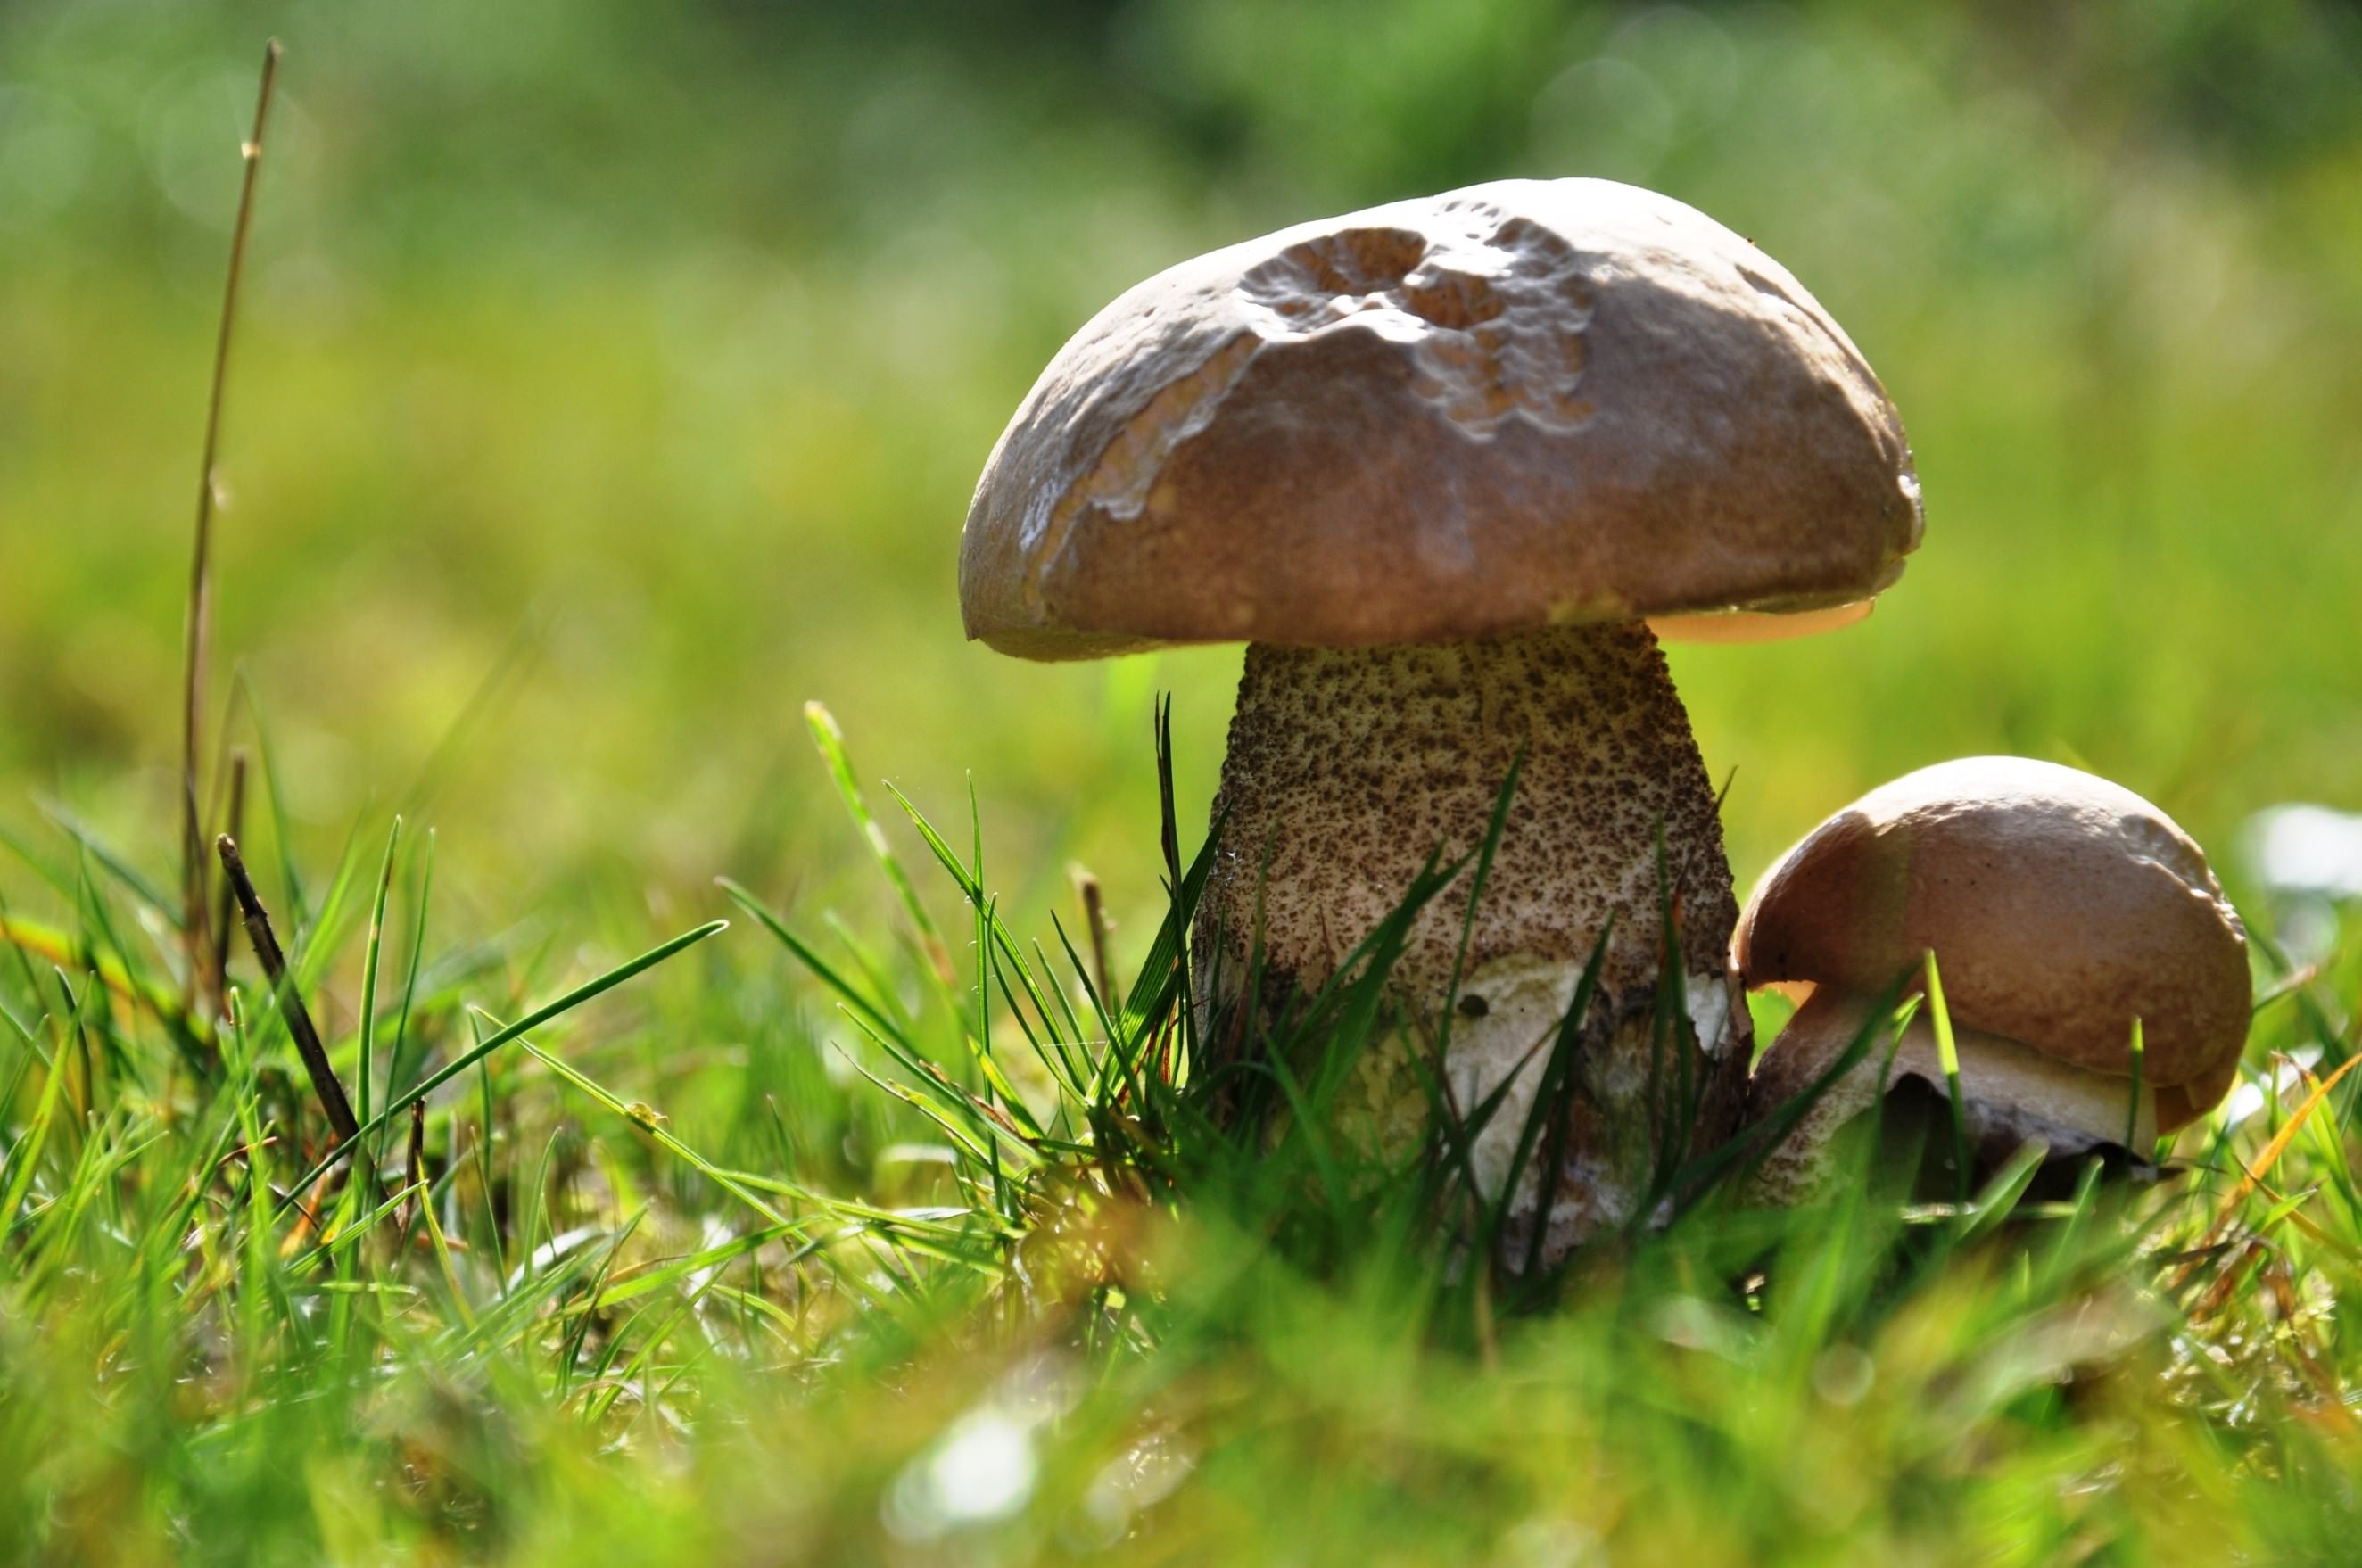 Champignons Little mushroom